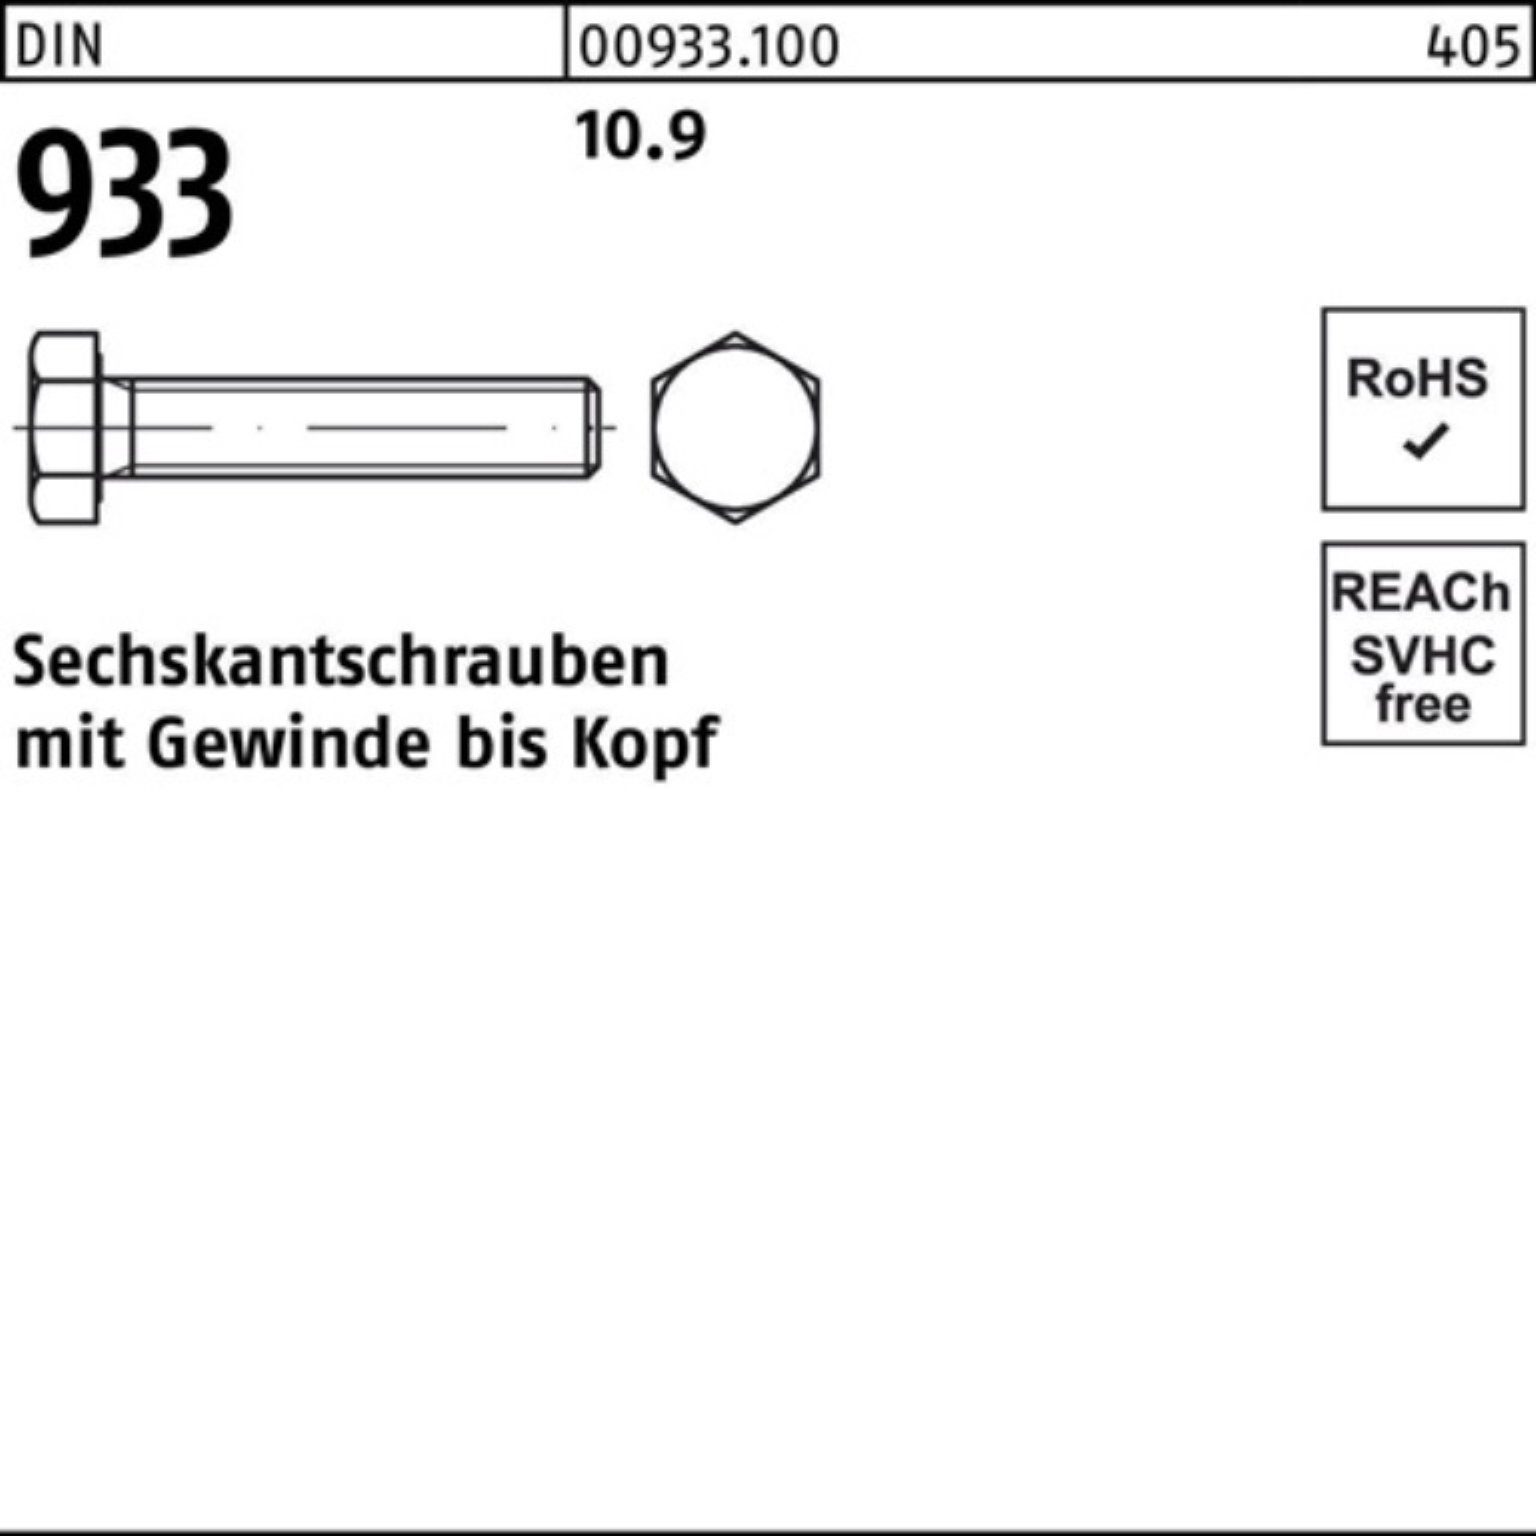 Reyher Sechskantschraube 80 DIN VG 933 M6x 200 933 Sechskantschraube 200er DIN 10.9 Stück Pack